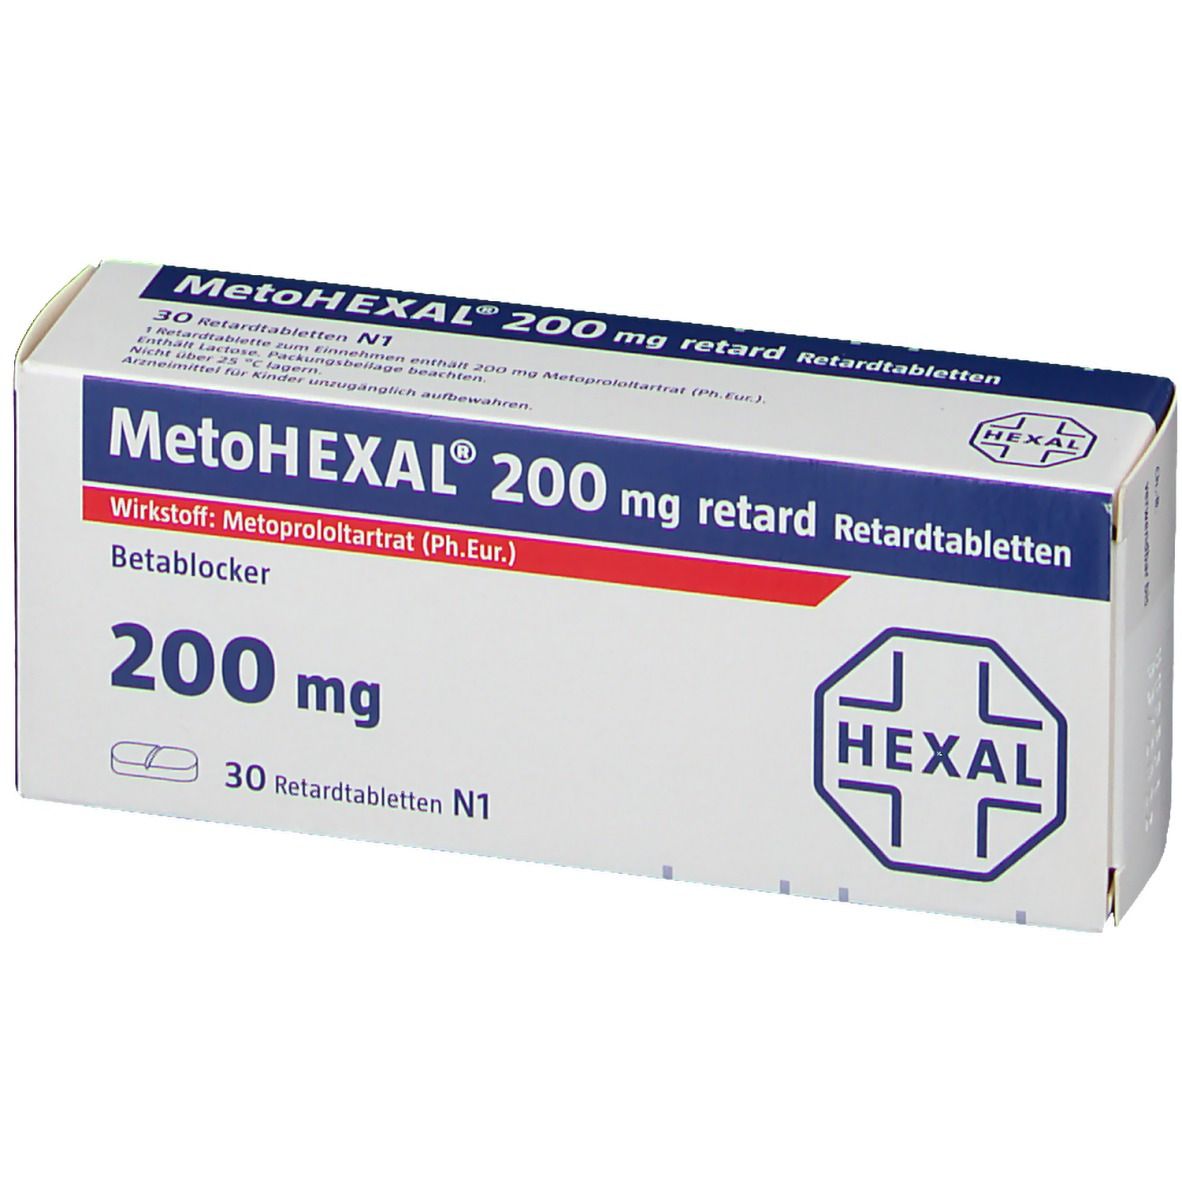 MetoHEXAL® 200 mg retard